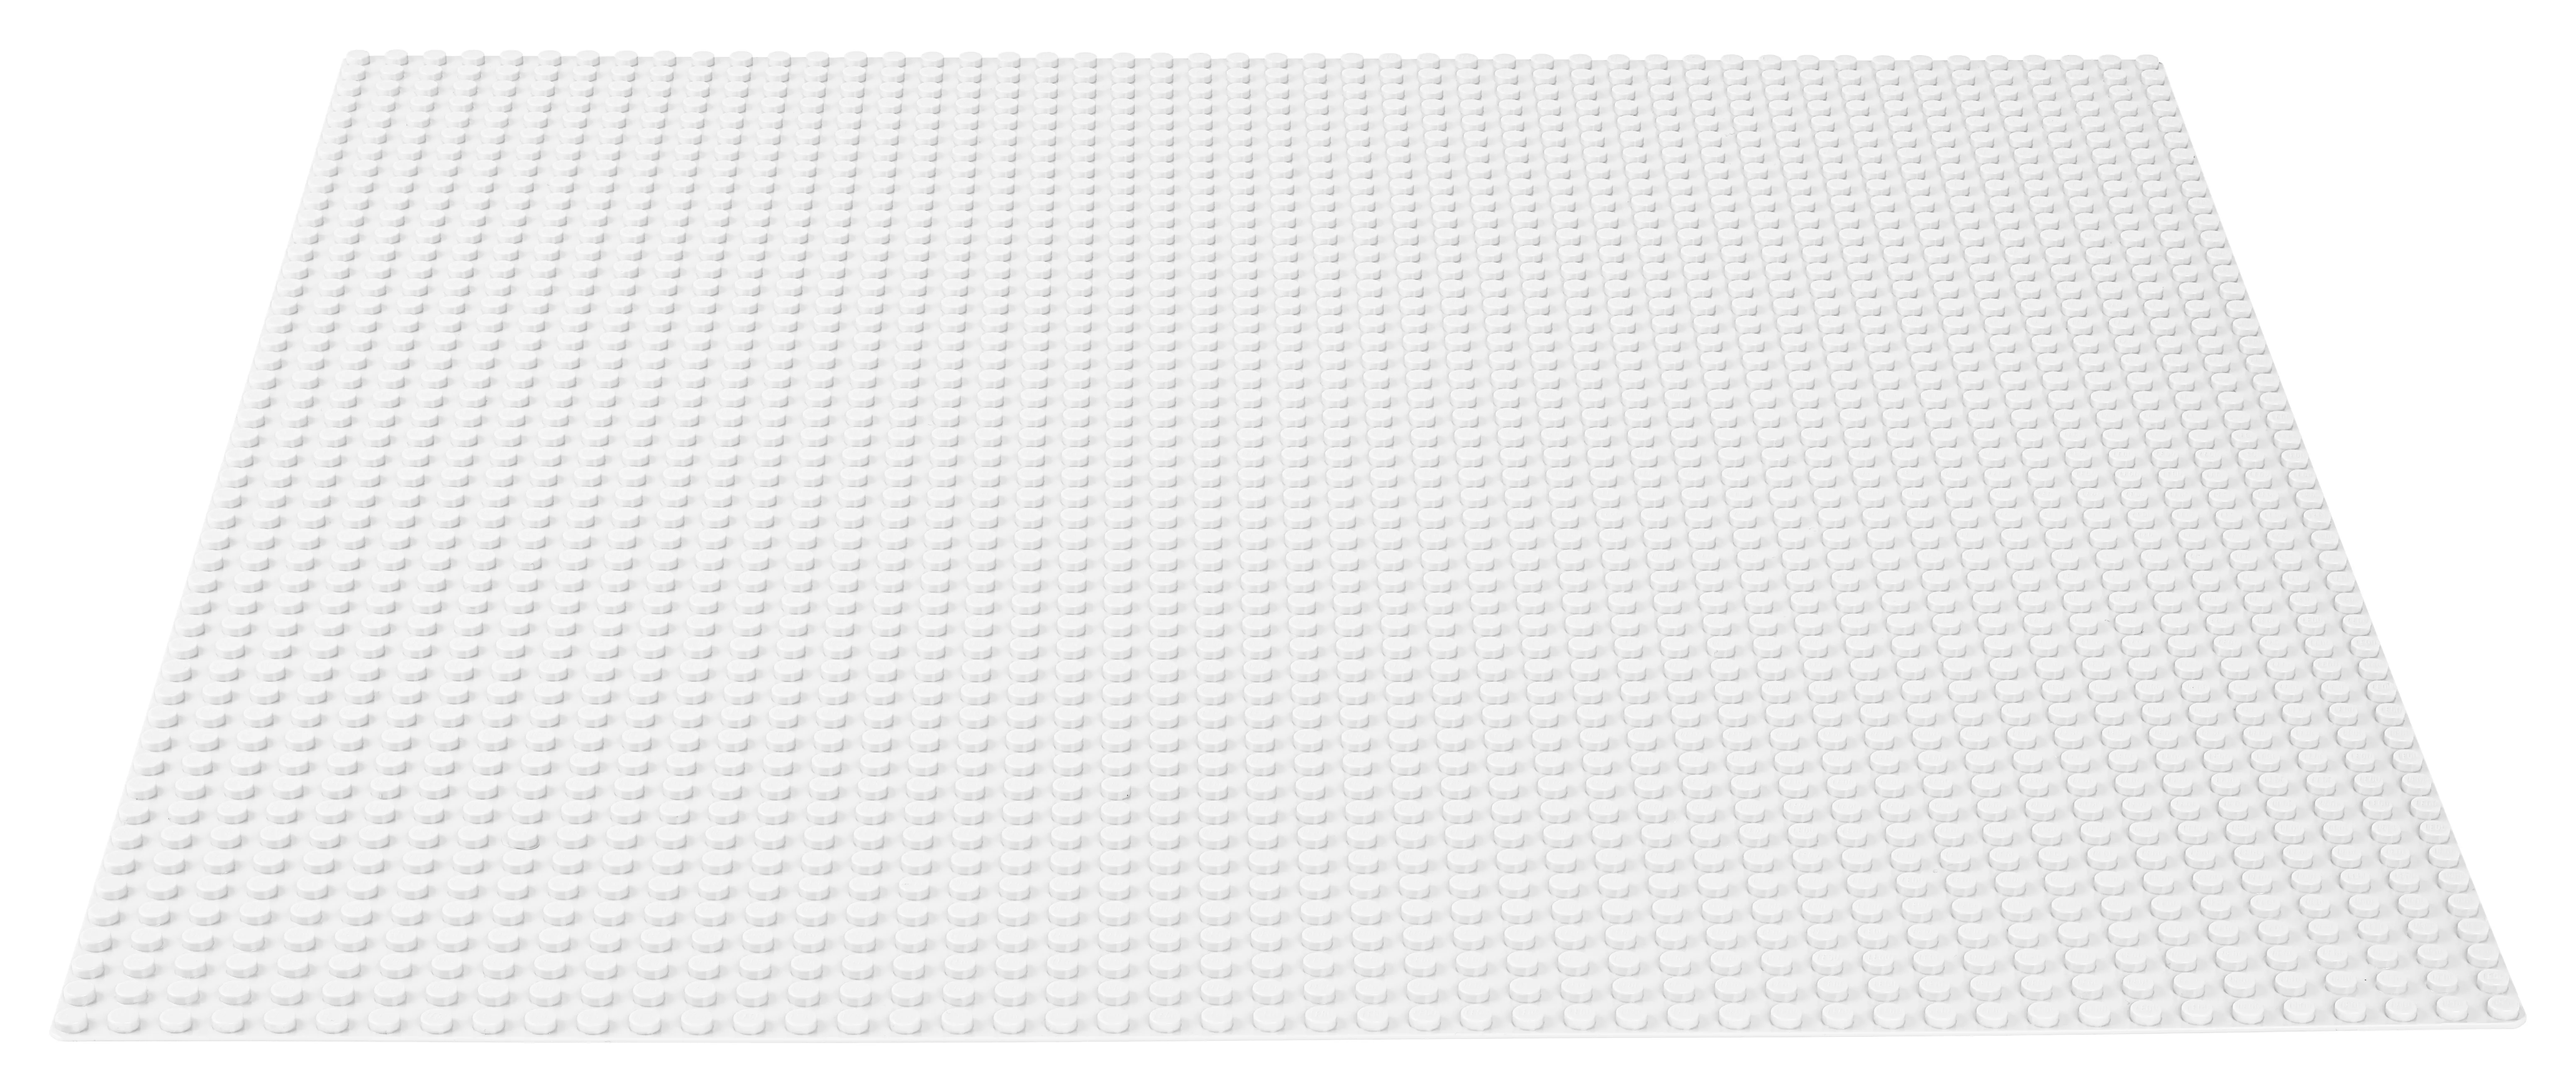 LEGO 11010 Classic Weiße Bauplatte